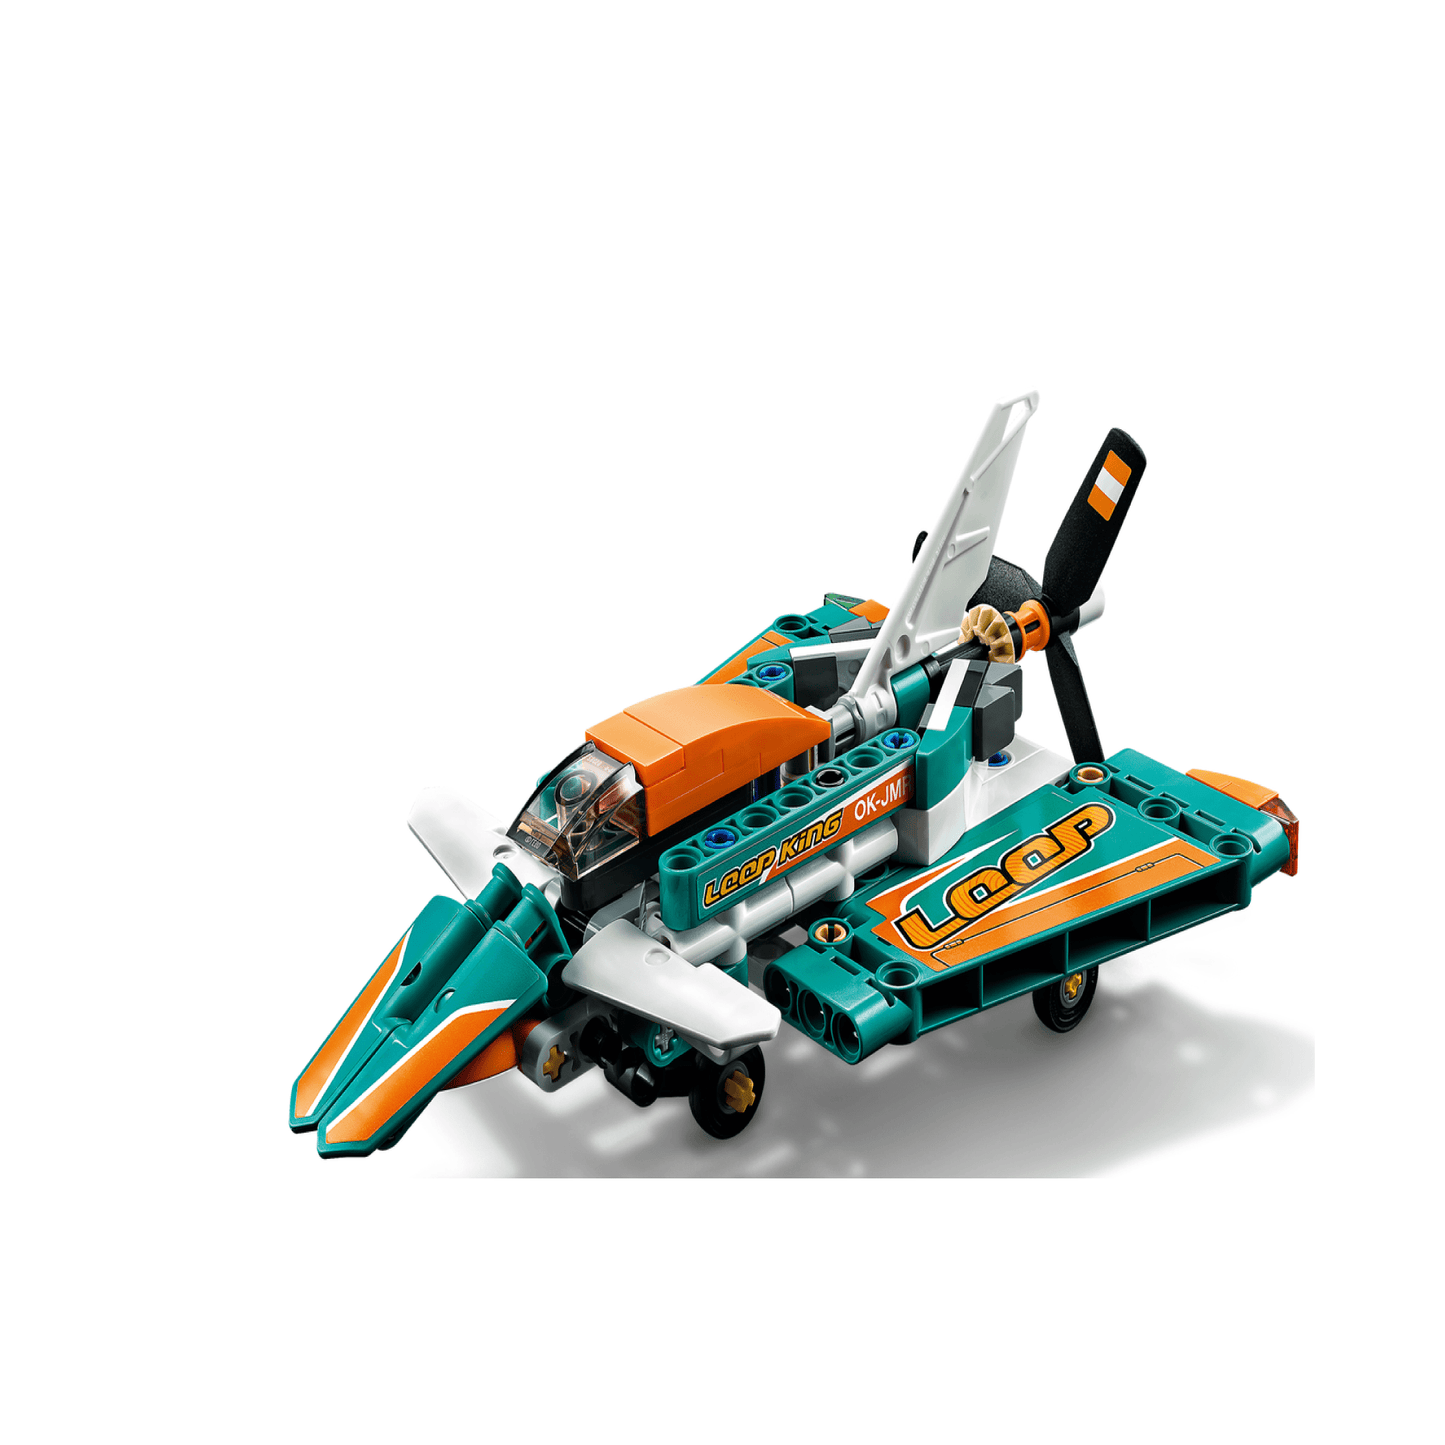 Avion Lego de Carreras